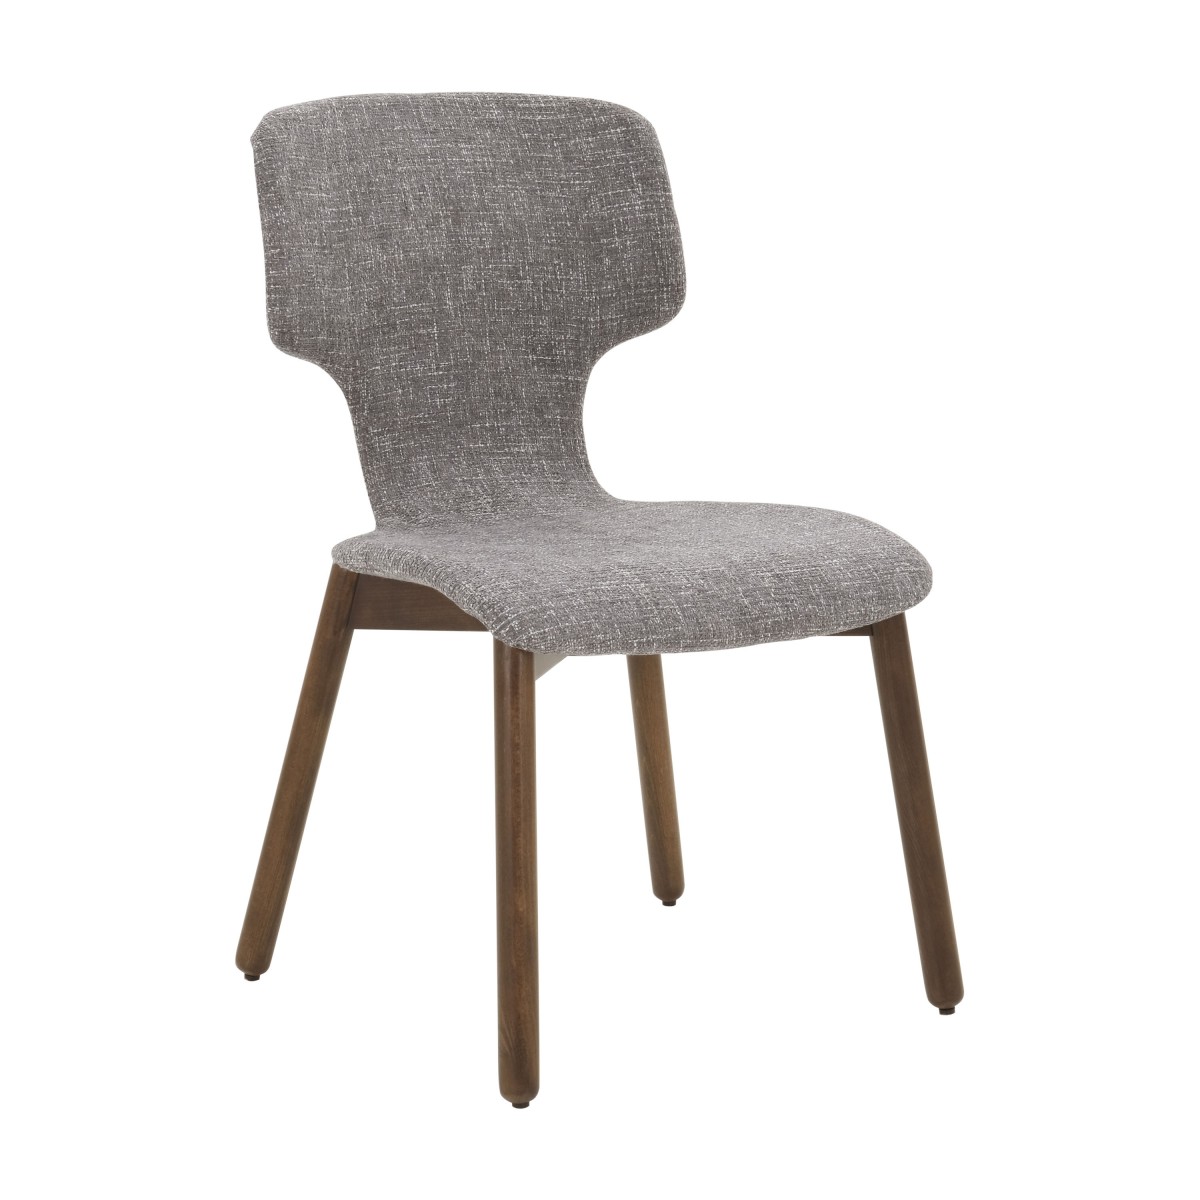 italian modern chair leggera 3179